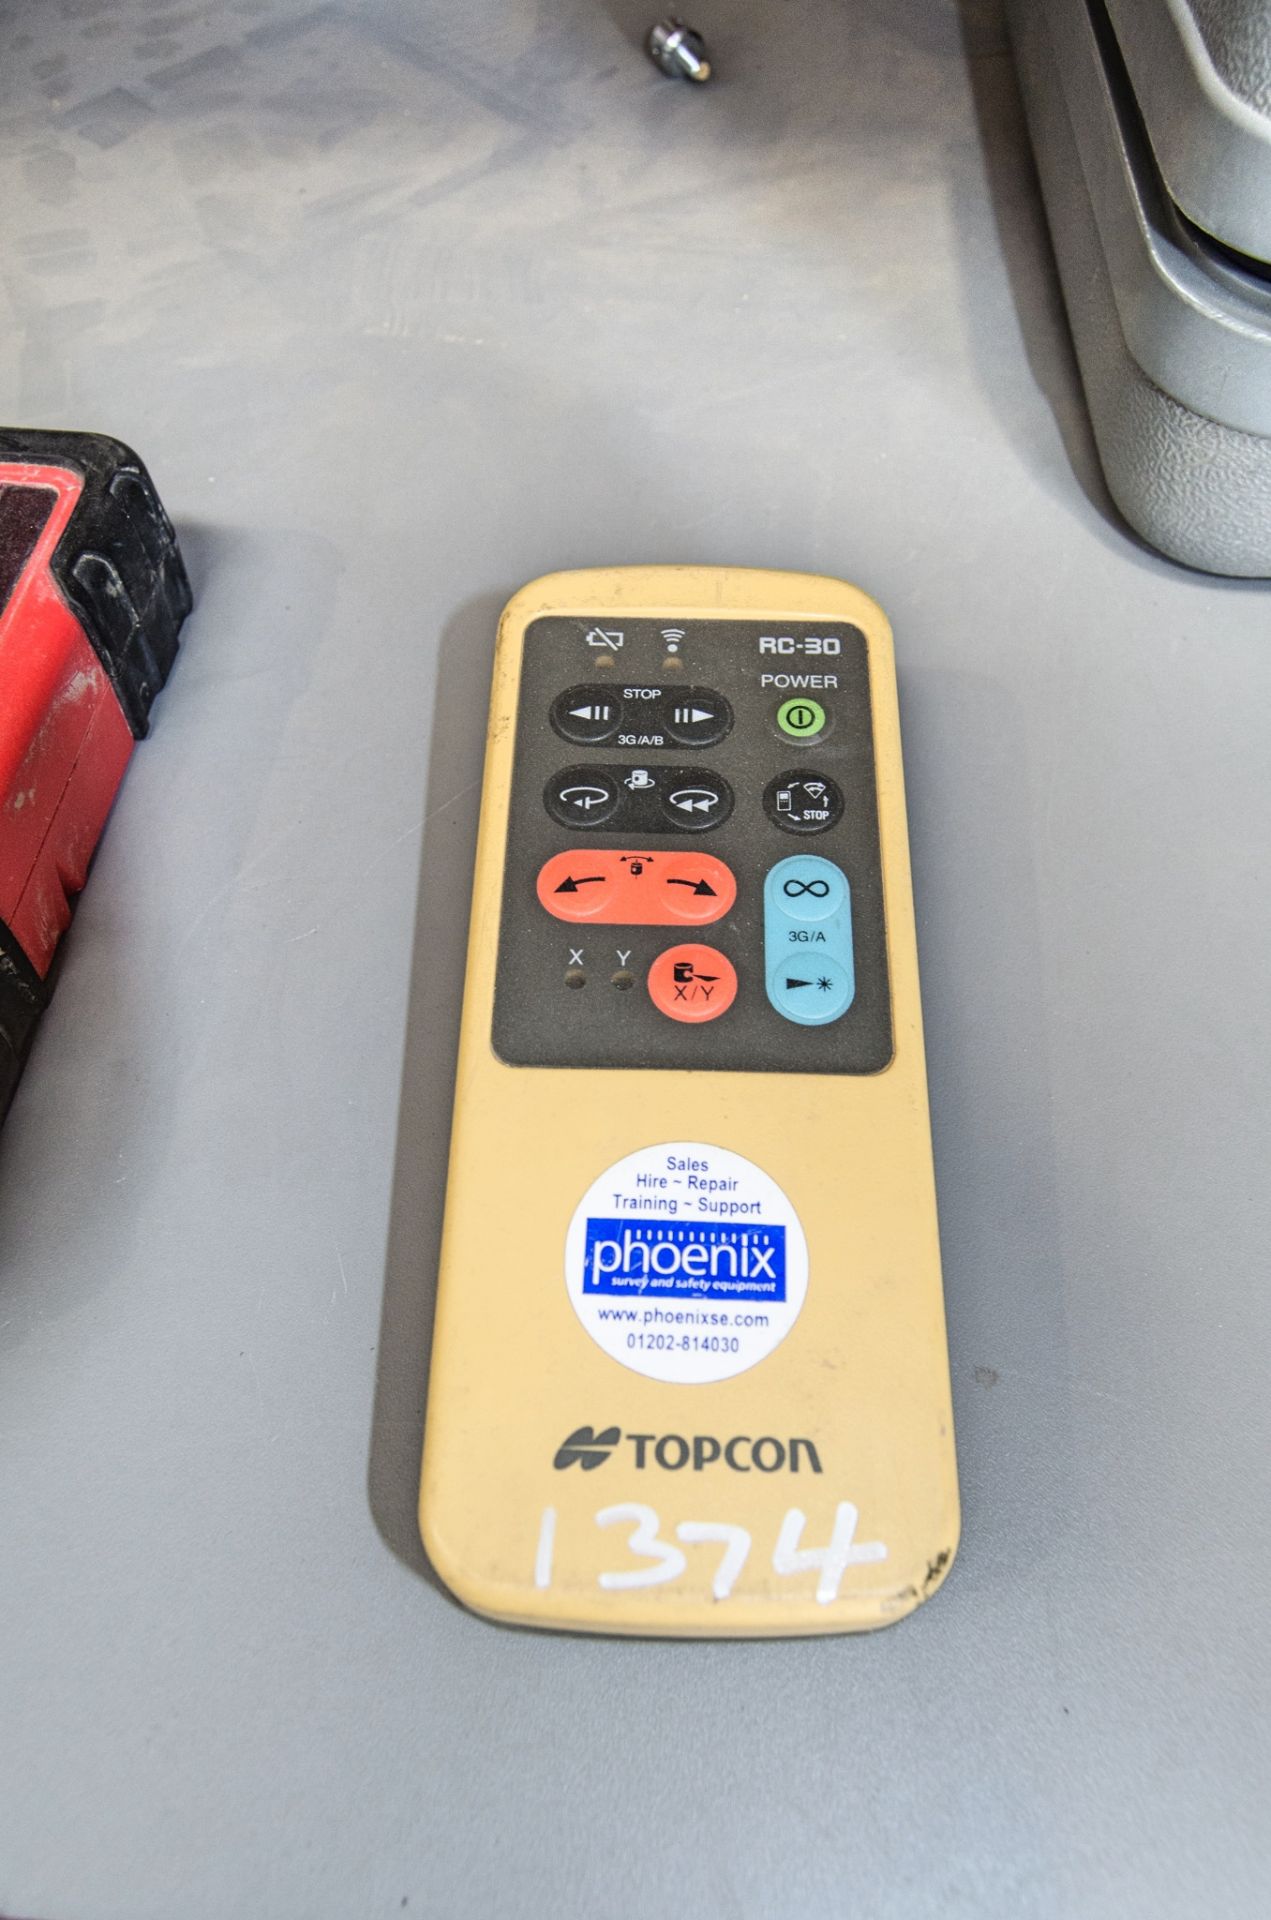 Topcon RC-30 laser remote control